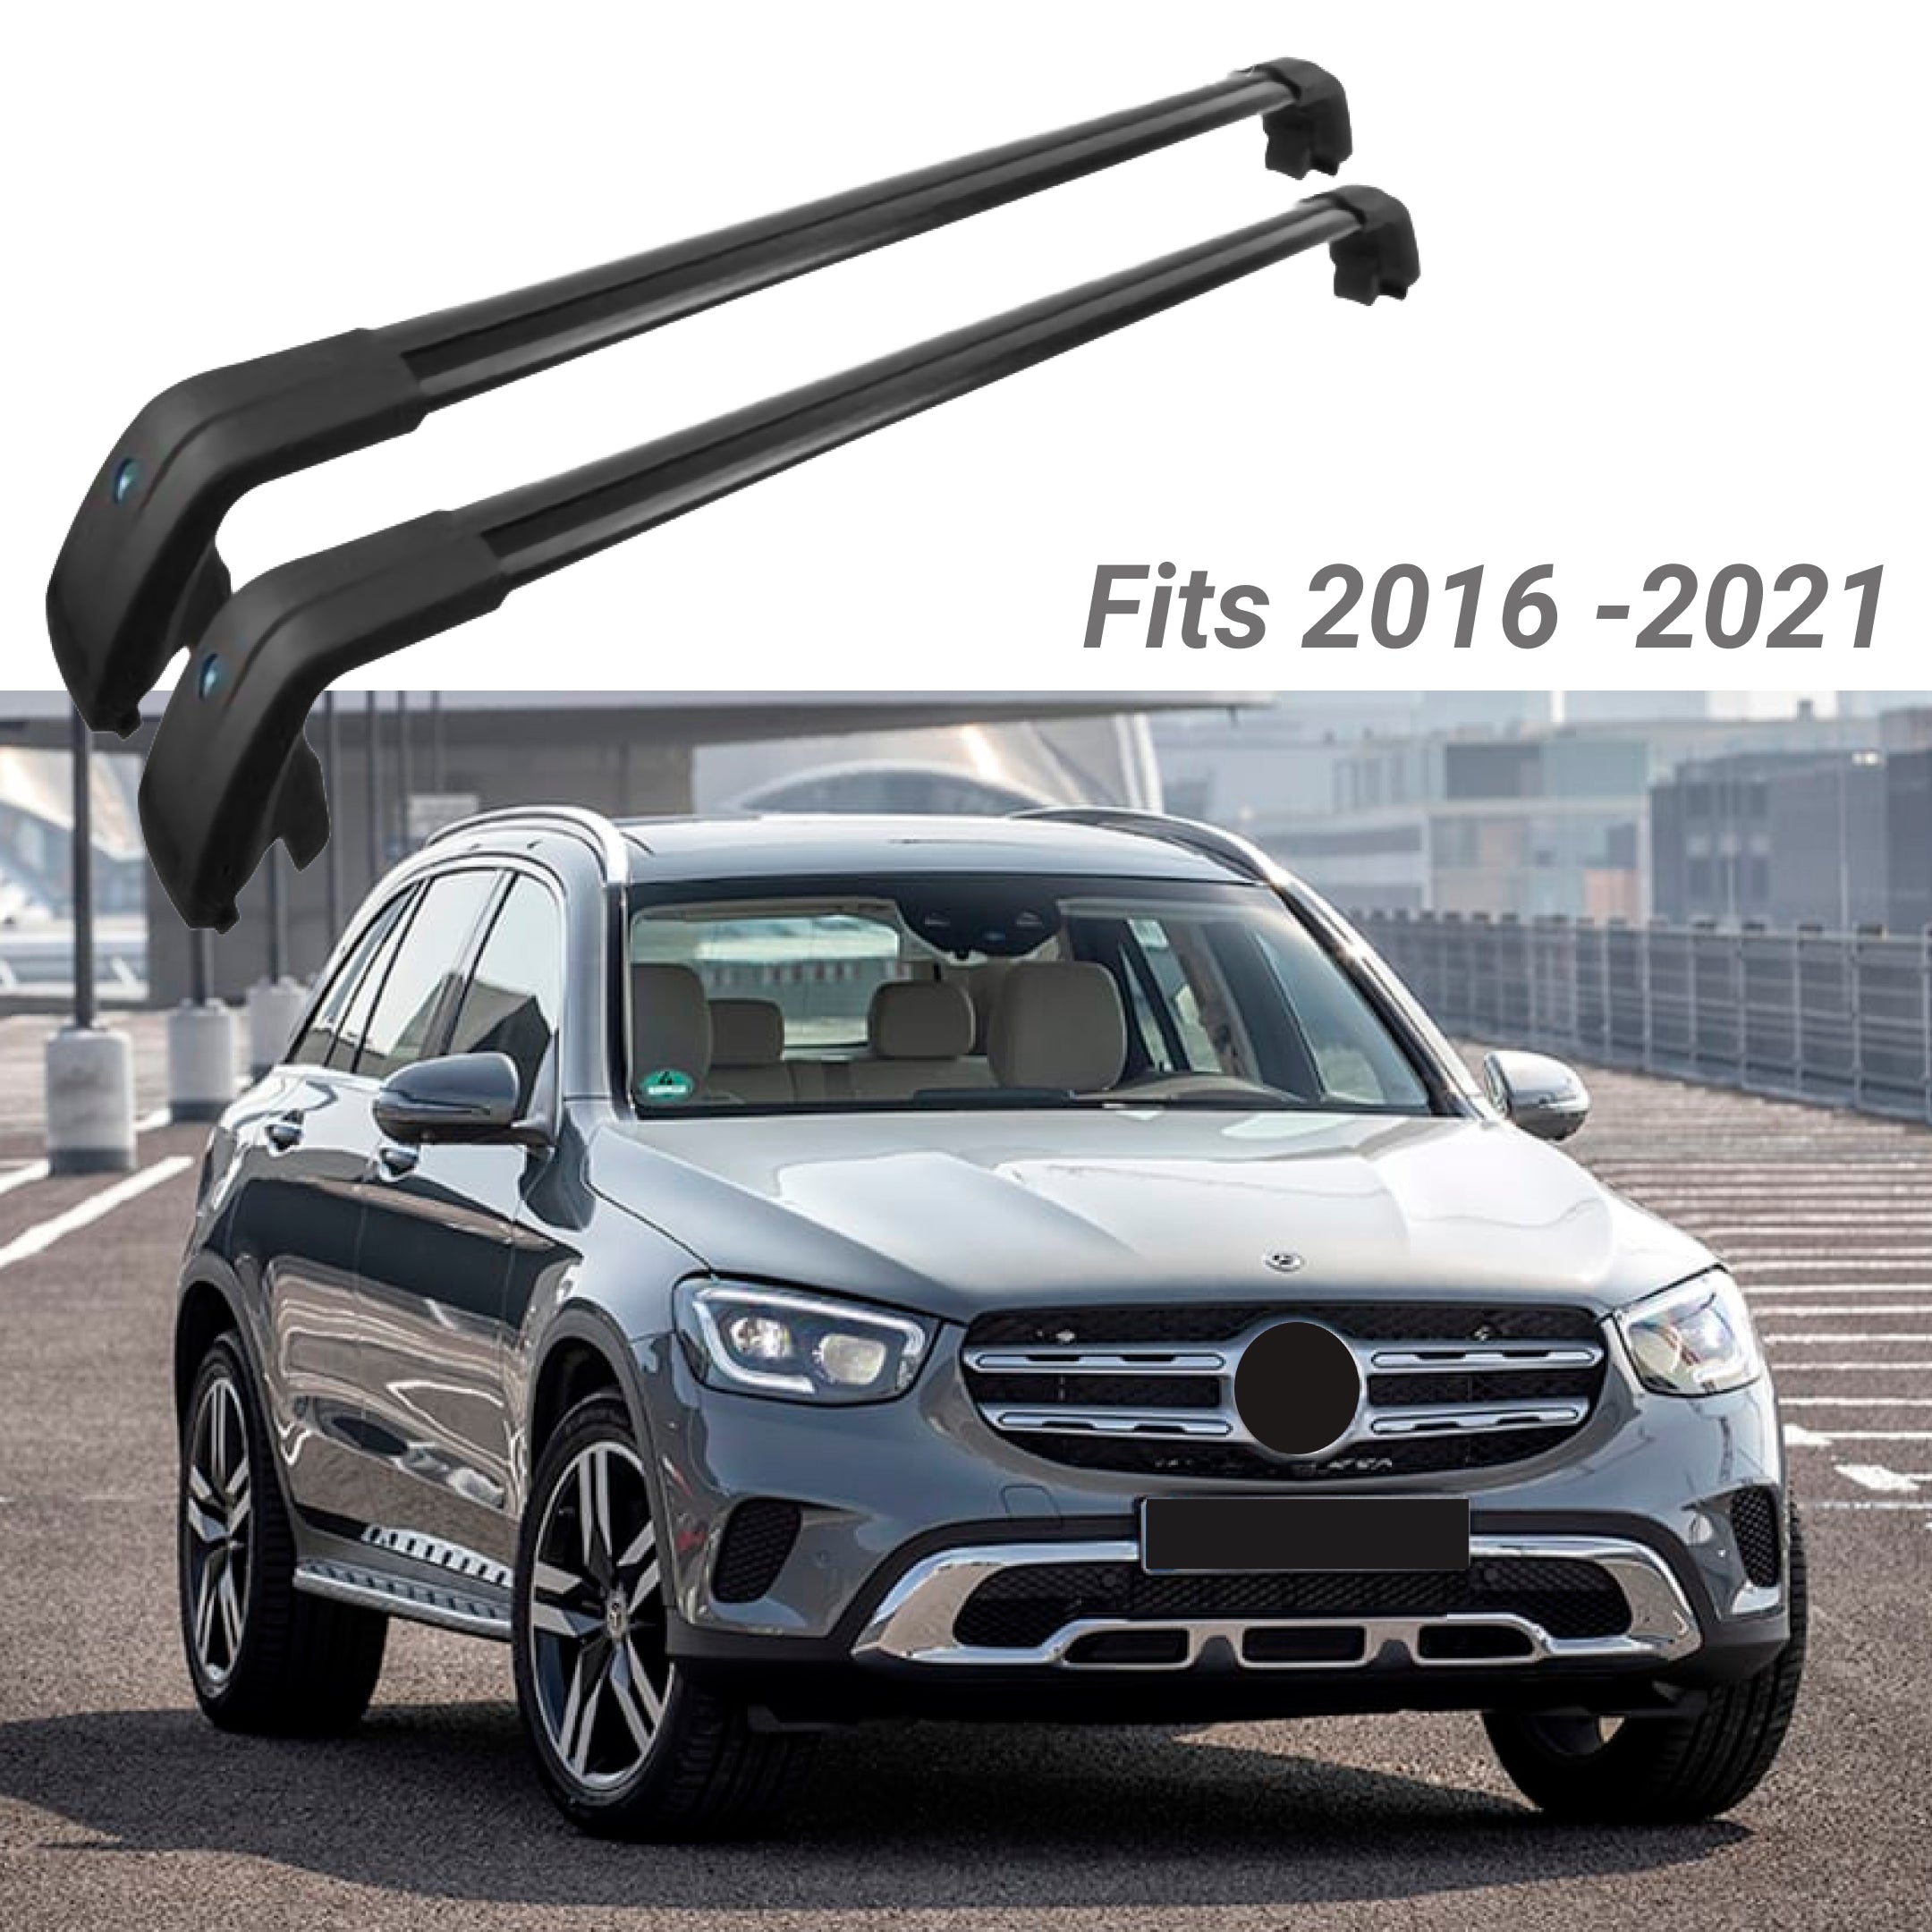 Fit 2016-2021 Mercedes Benz GLC Black Roof Rack Baggage Luggage Cross Bar Crossbar